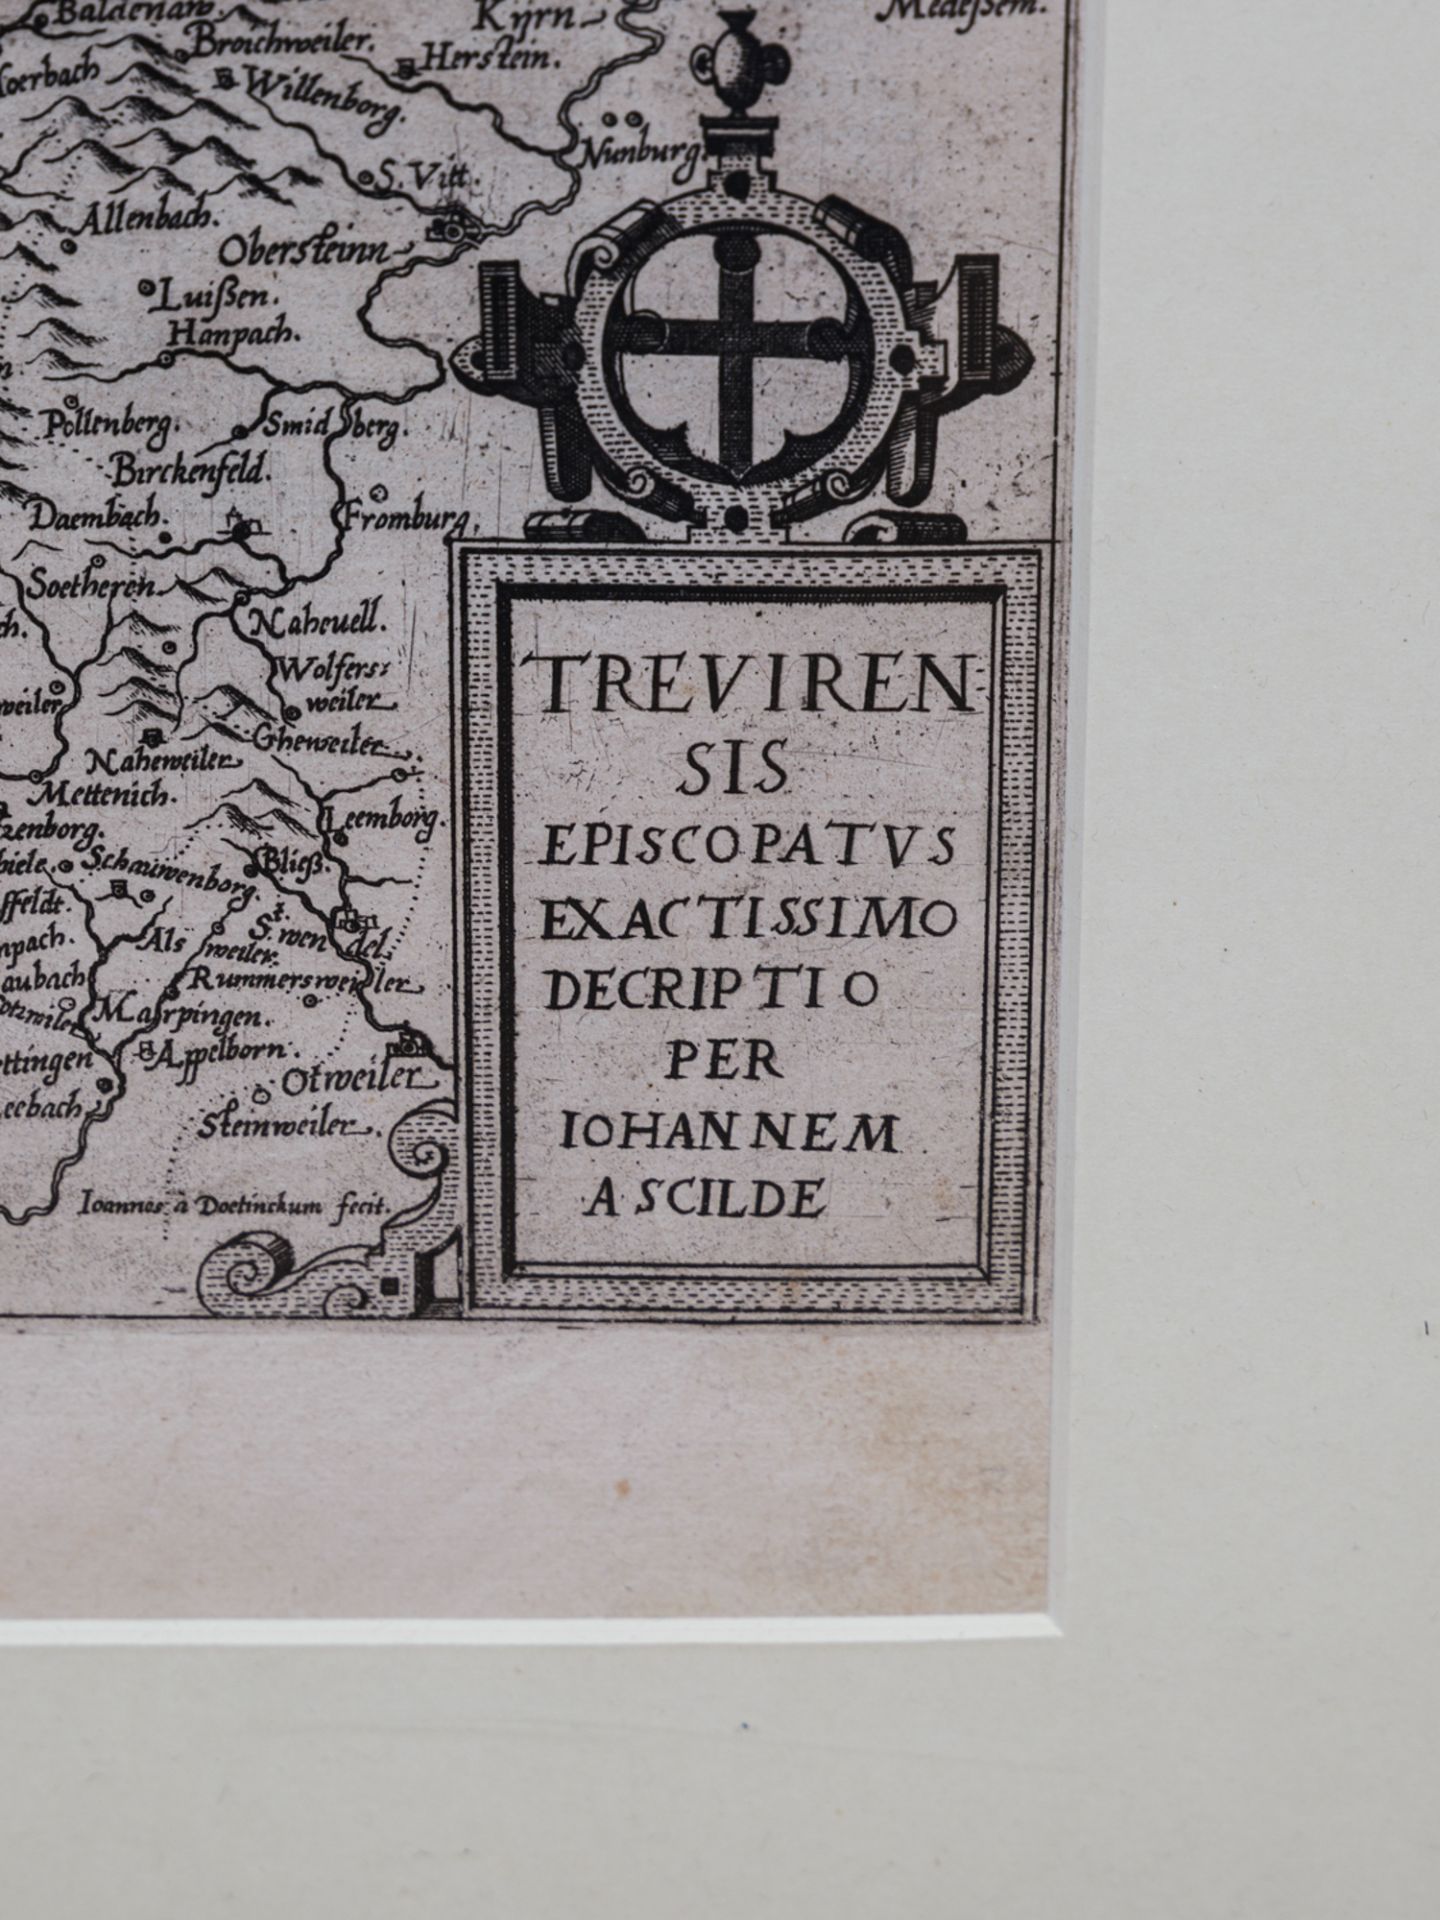 Kupferstichkarte des Erzbistums Trier - Image 3 of 3